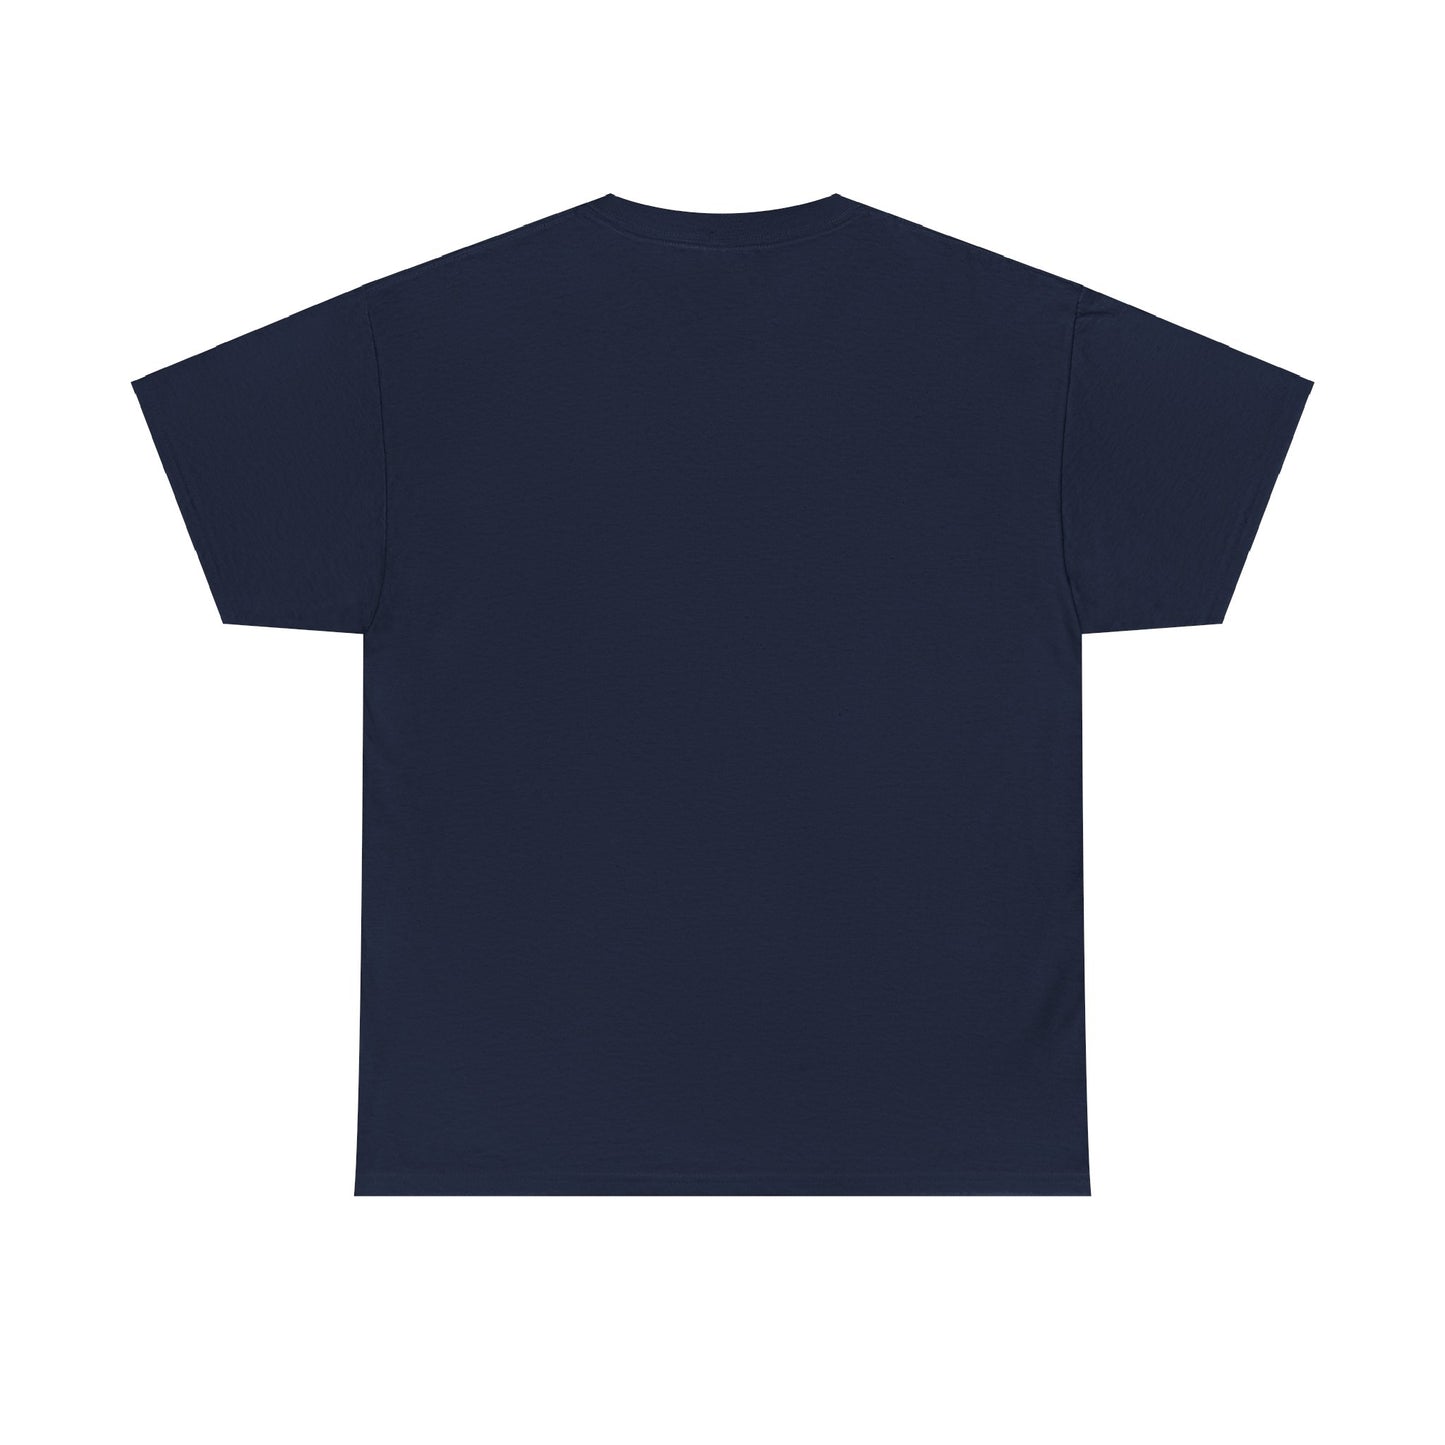 Unisex Daniel Ricciardo T-Shirt